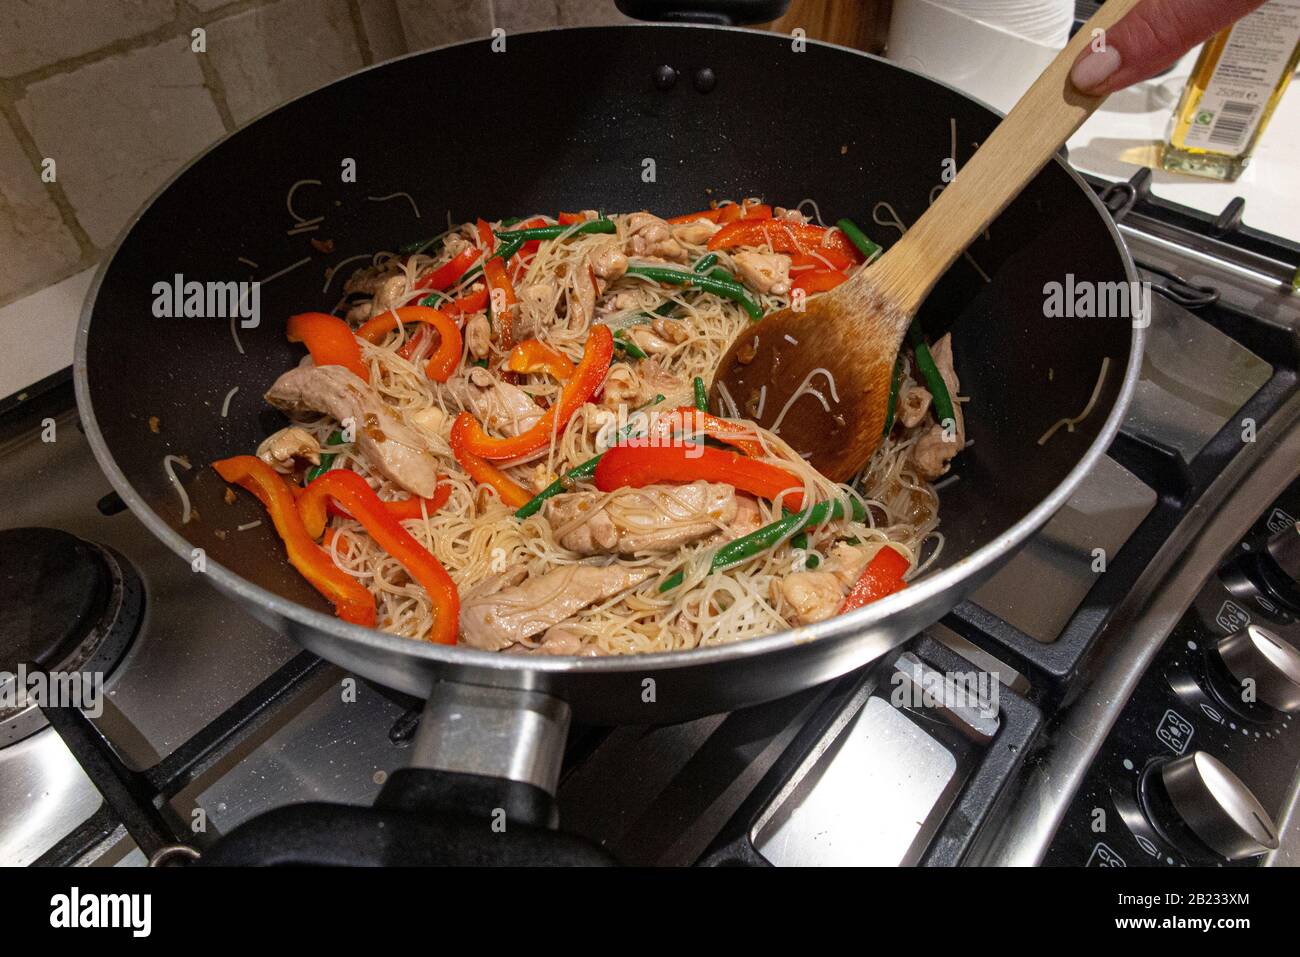 Cuisine asiatique dans un wok sur une table de cuisson au gaz Photo Stock -  Alamy